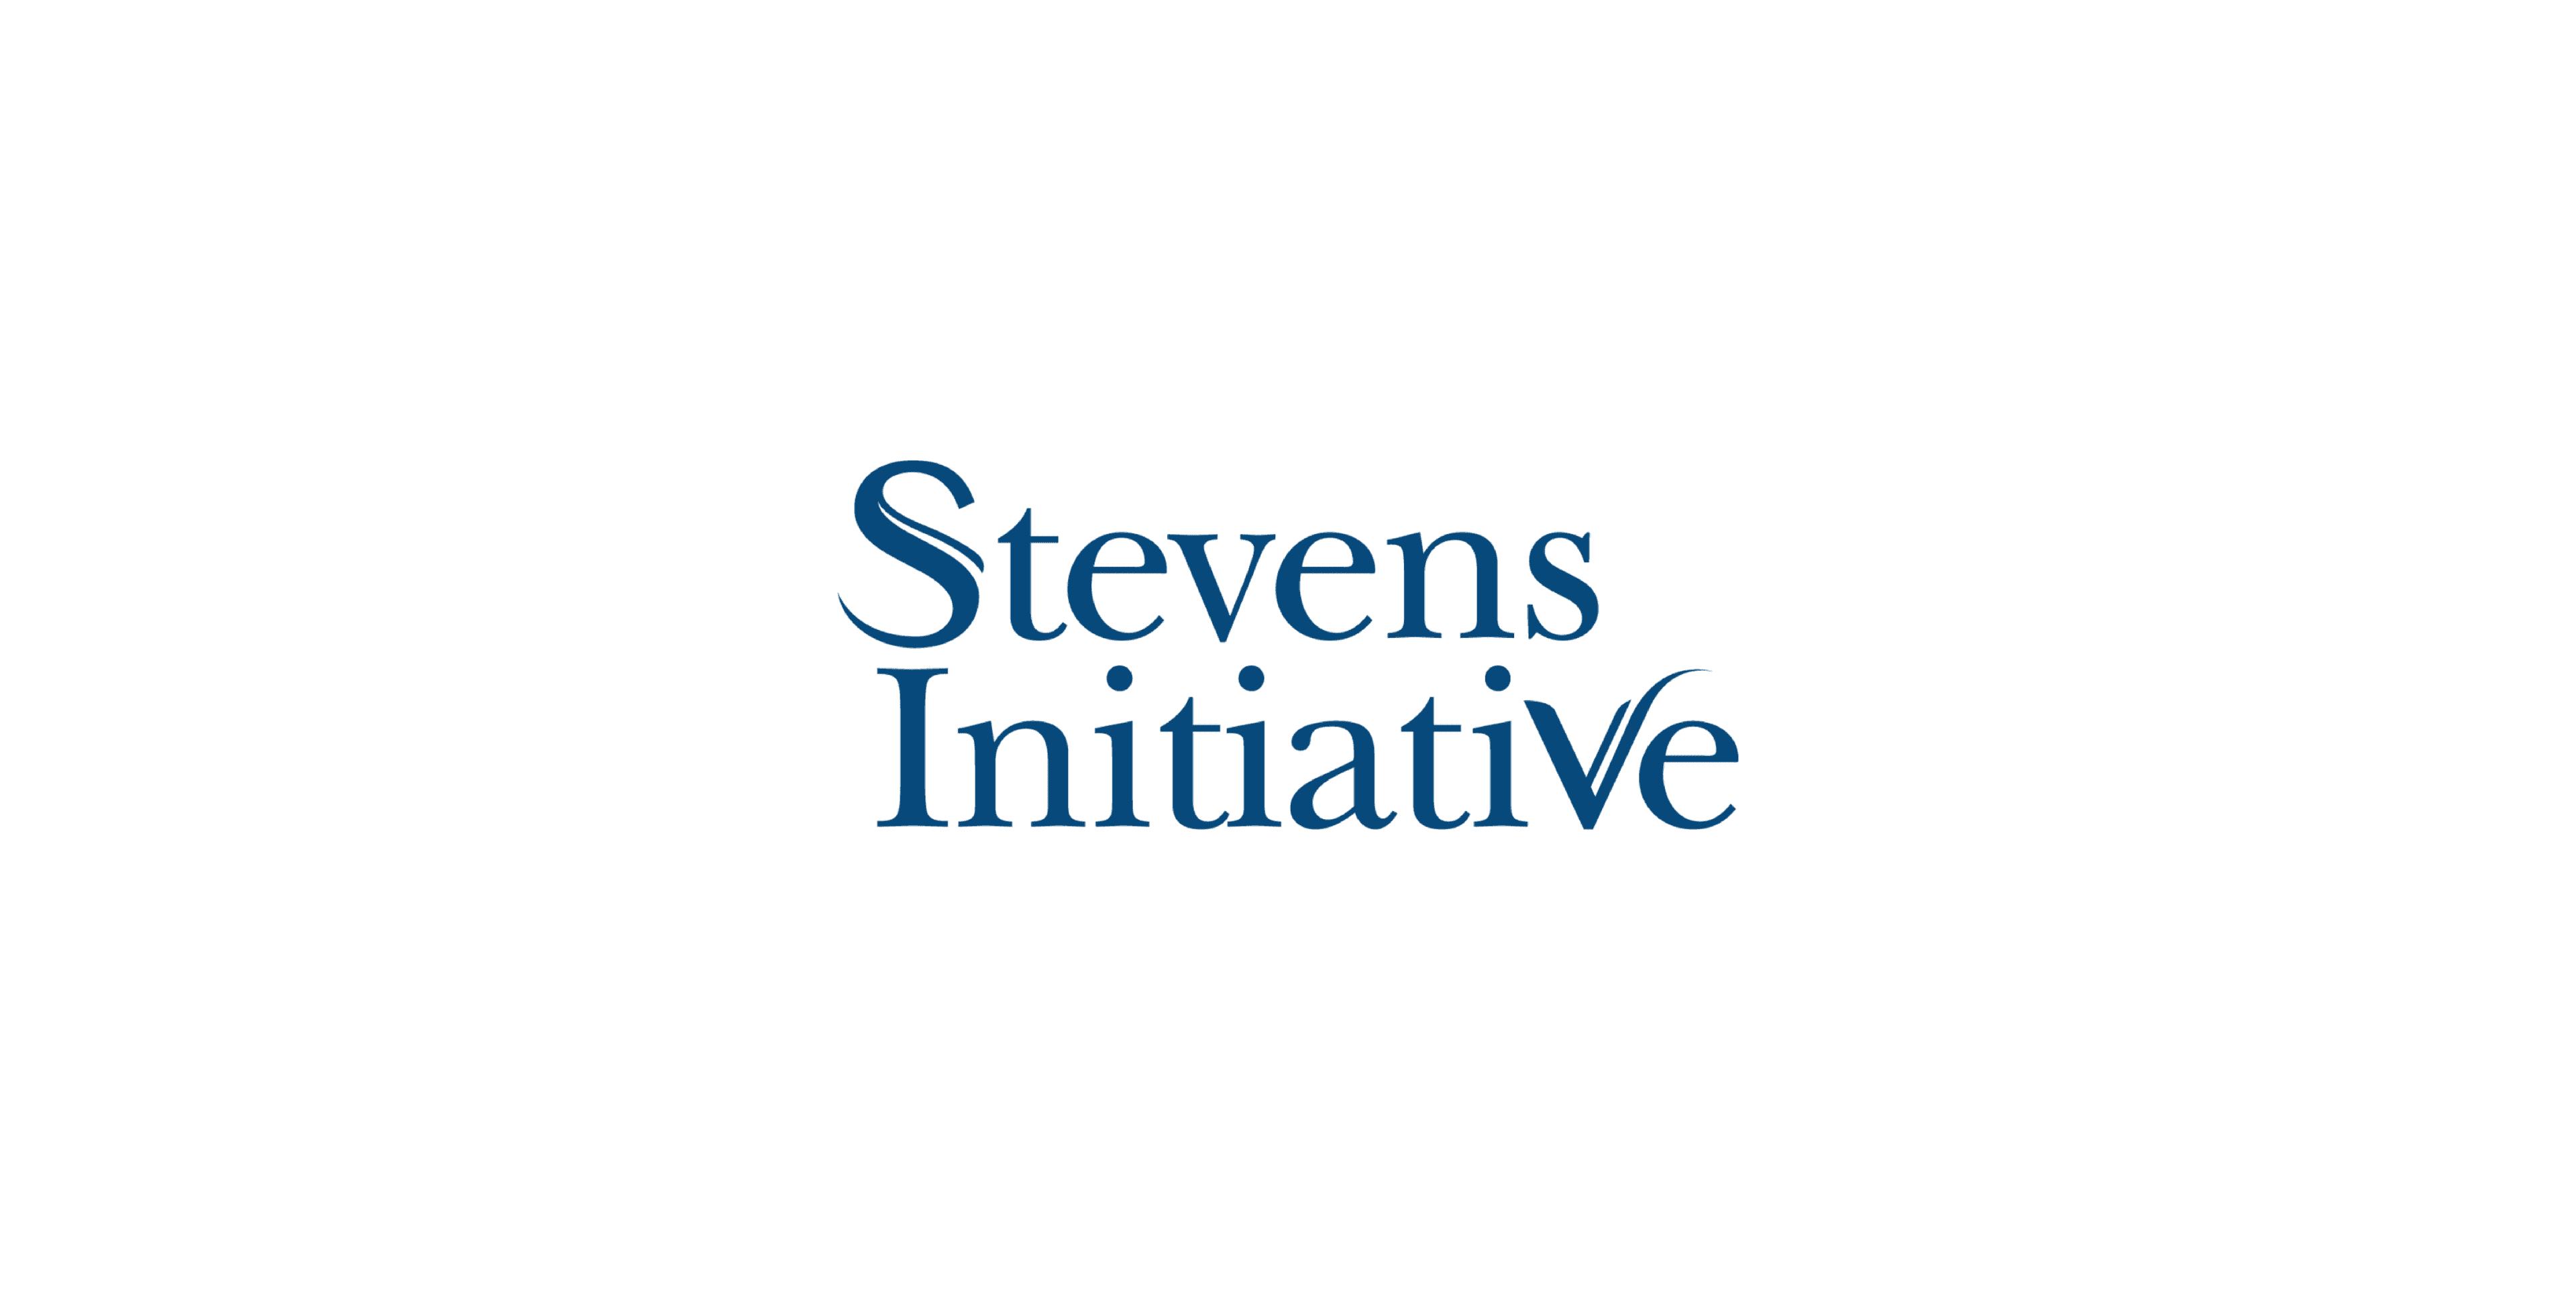 Stevens Initiative